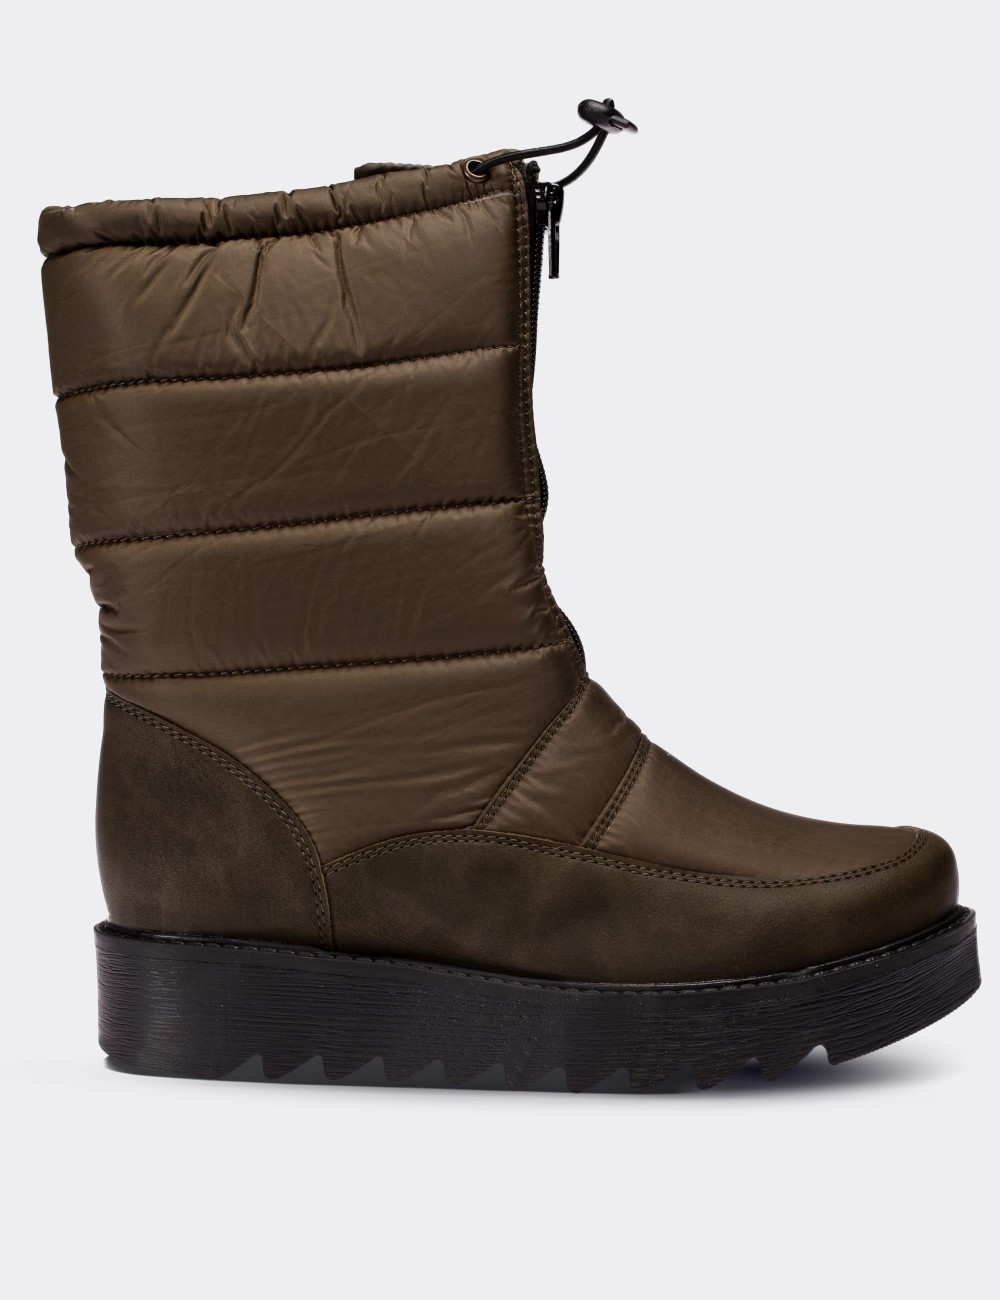 Green Snow Boots - 30555ZYSLT04